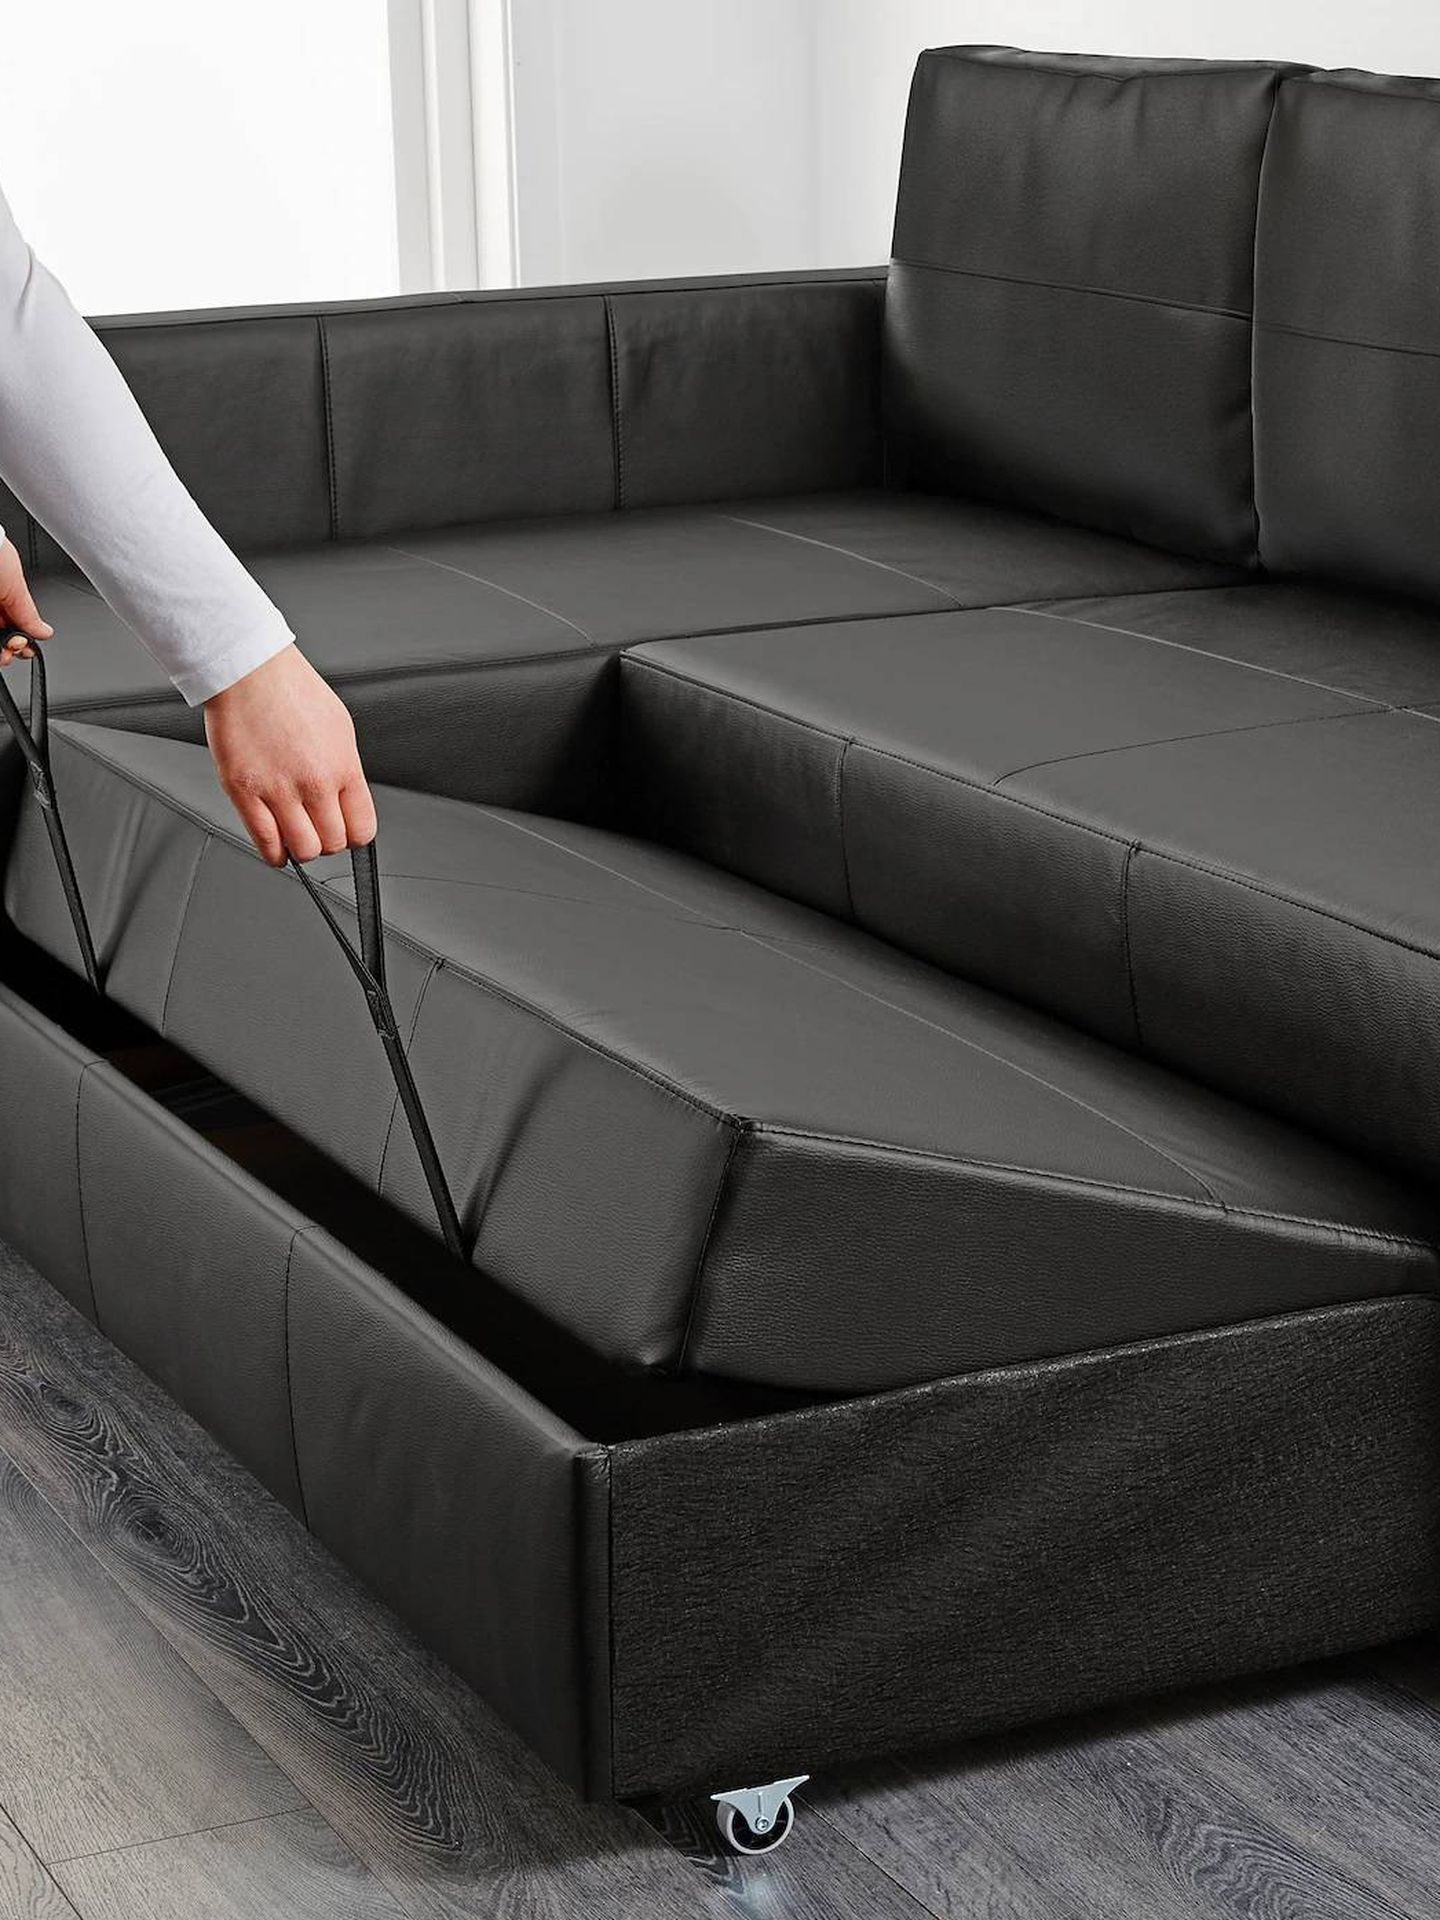 Con un sofá cama como este de Ikea, siempre tendrás una cama extra. (Cortesía)